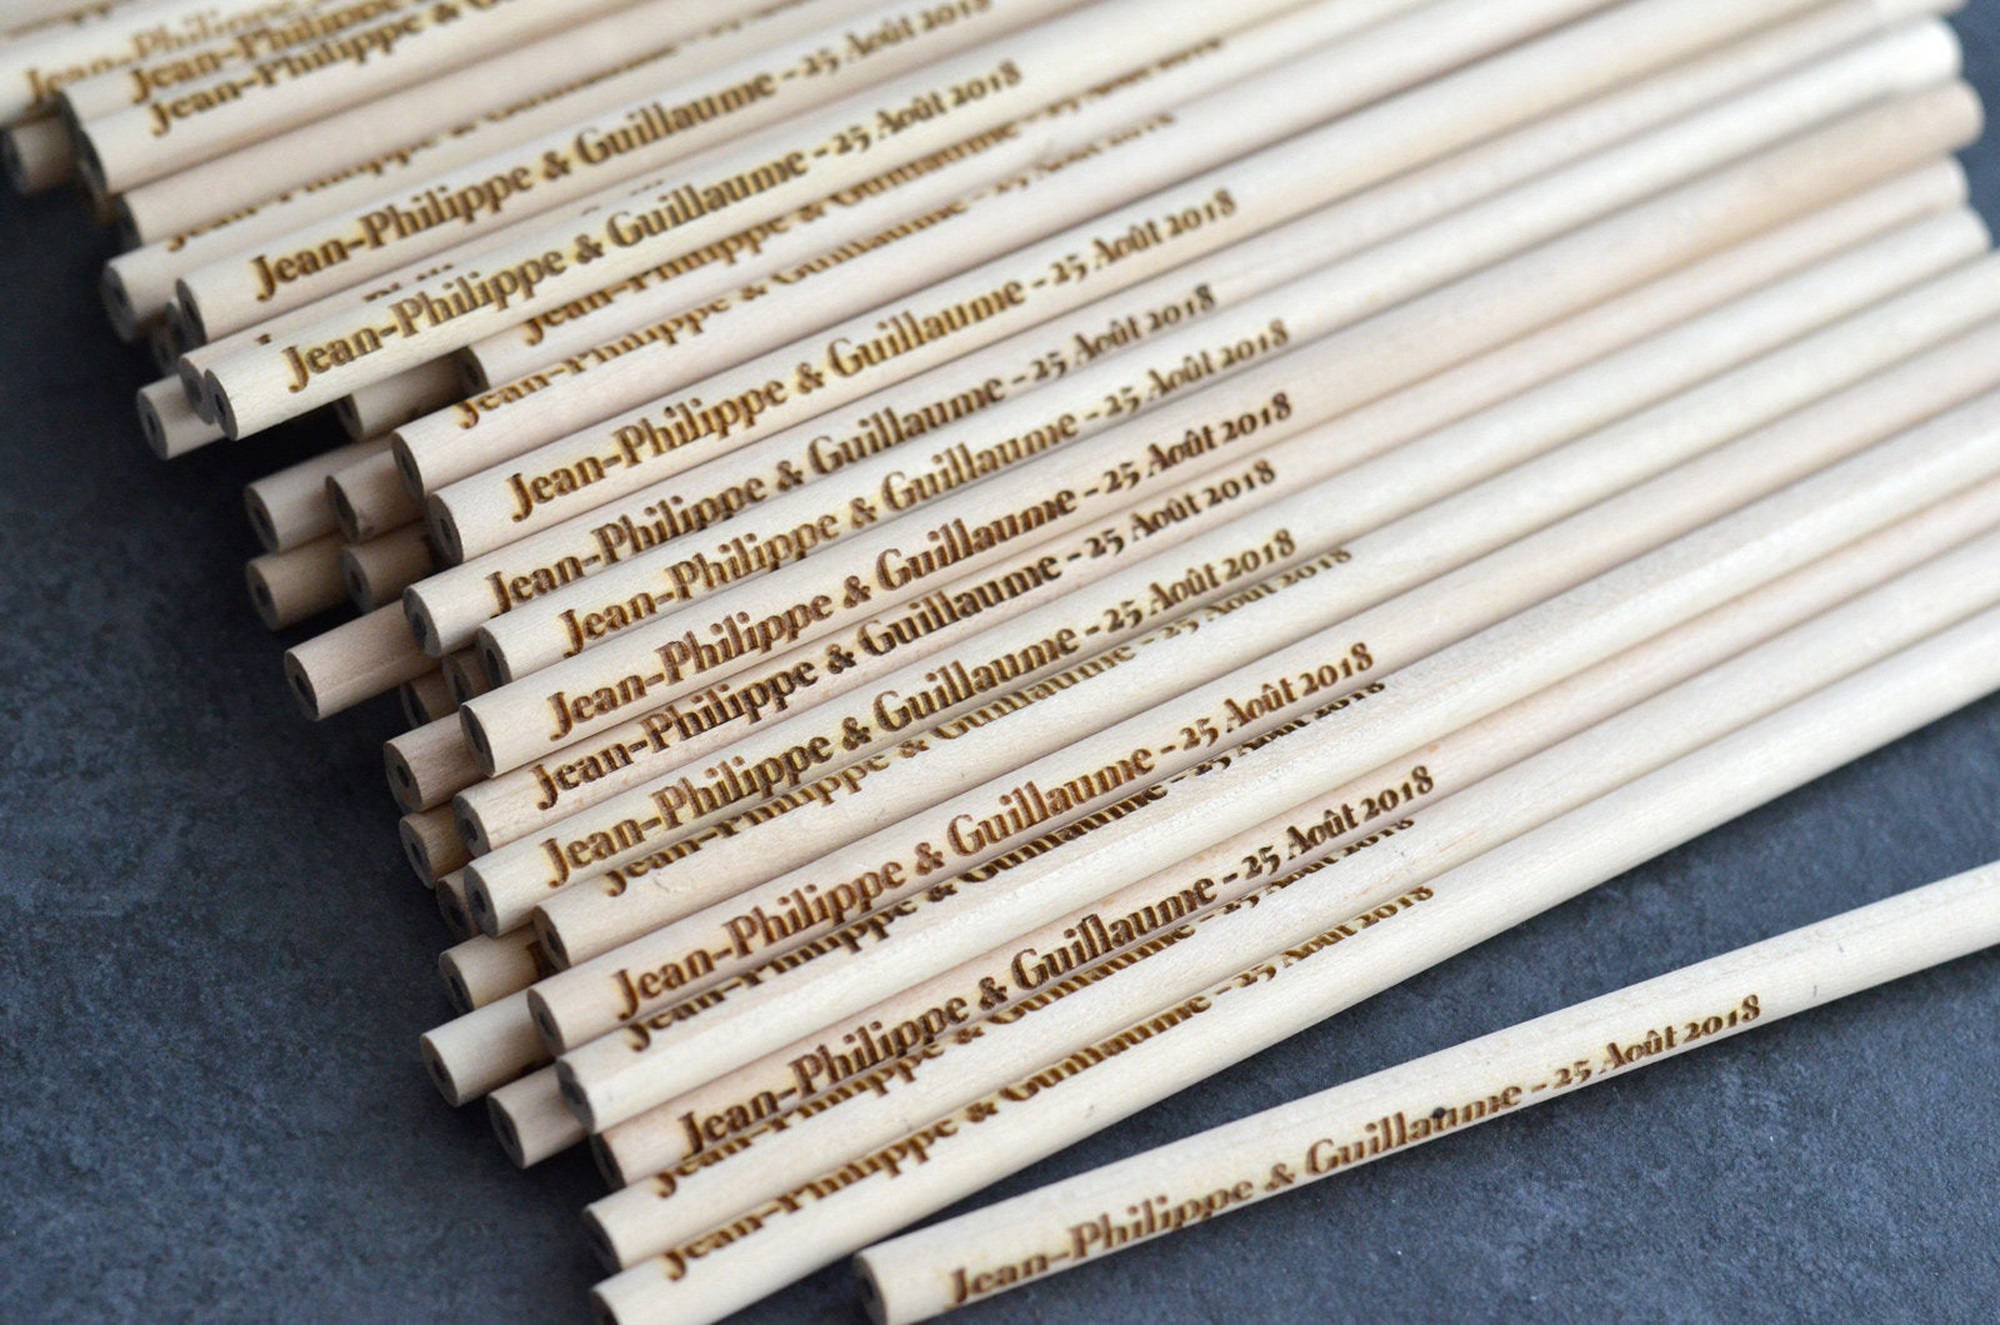 Crayon en forme de trèfle personnalisé en bois de cèdre certifié